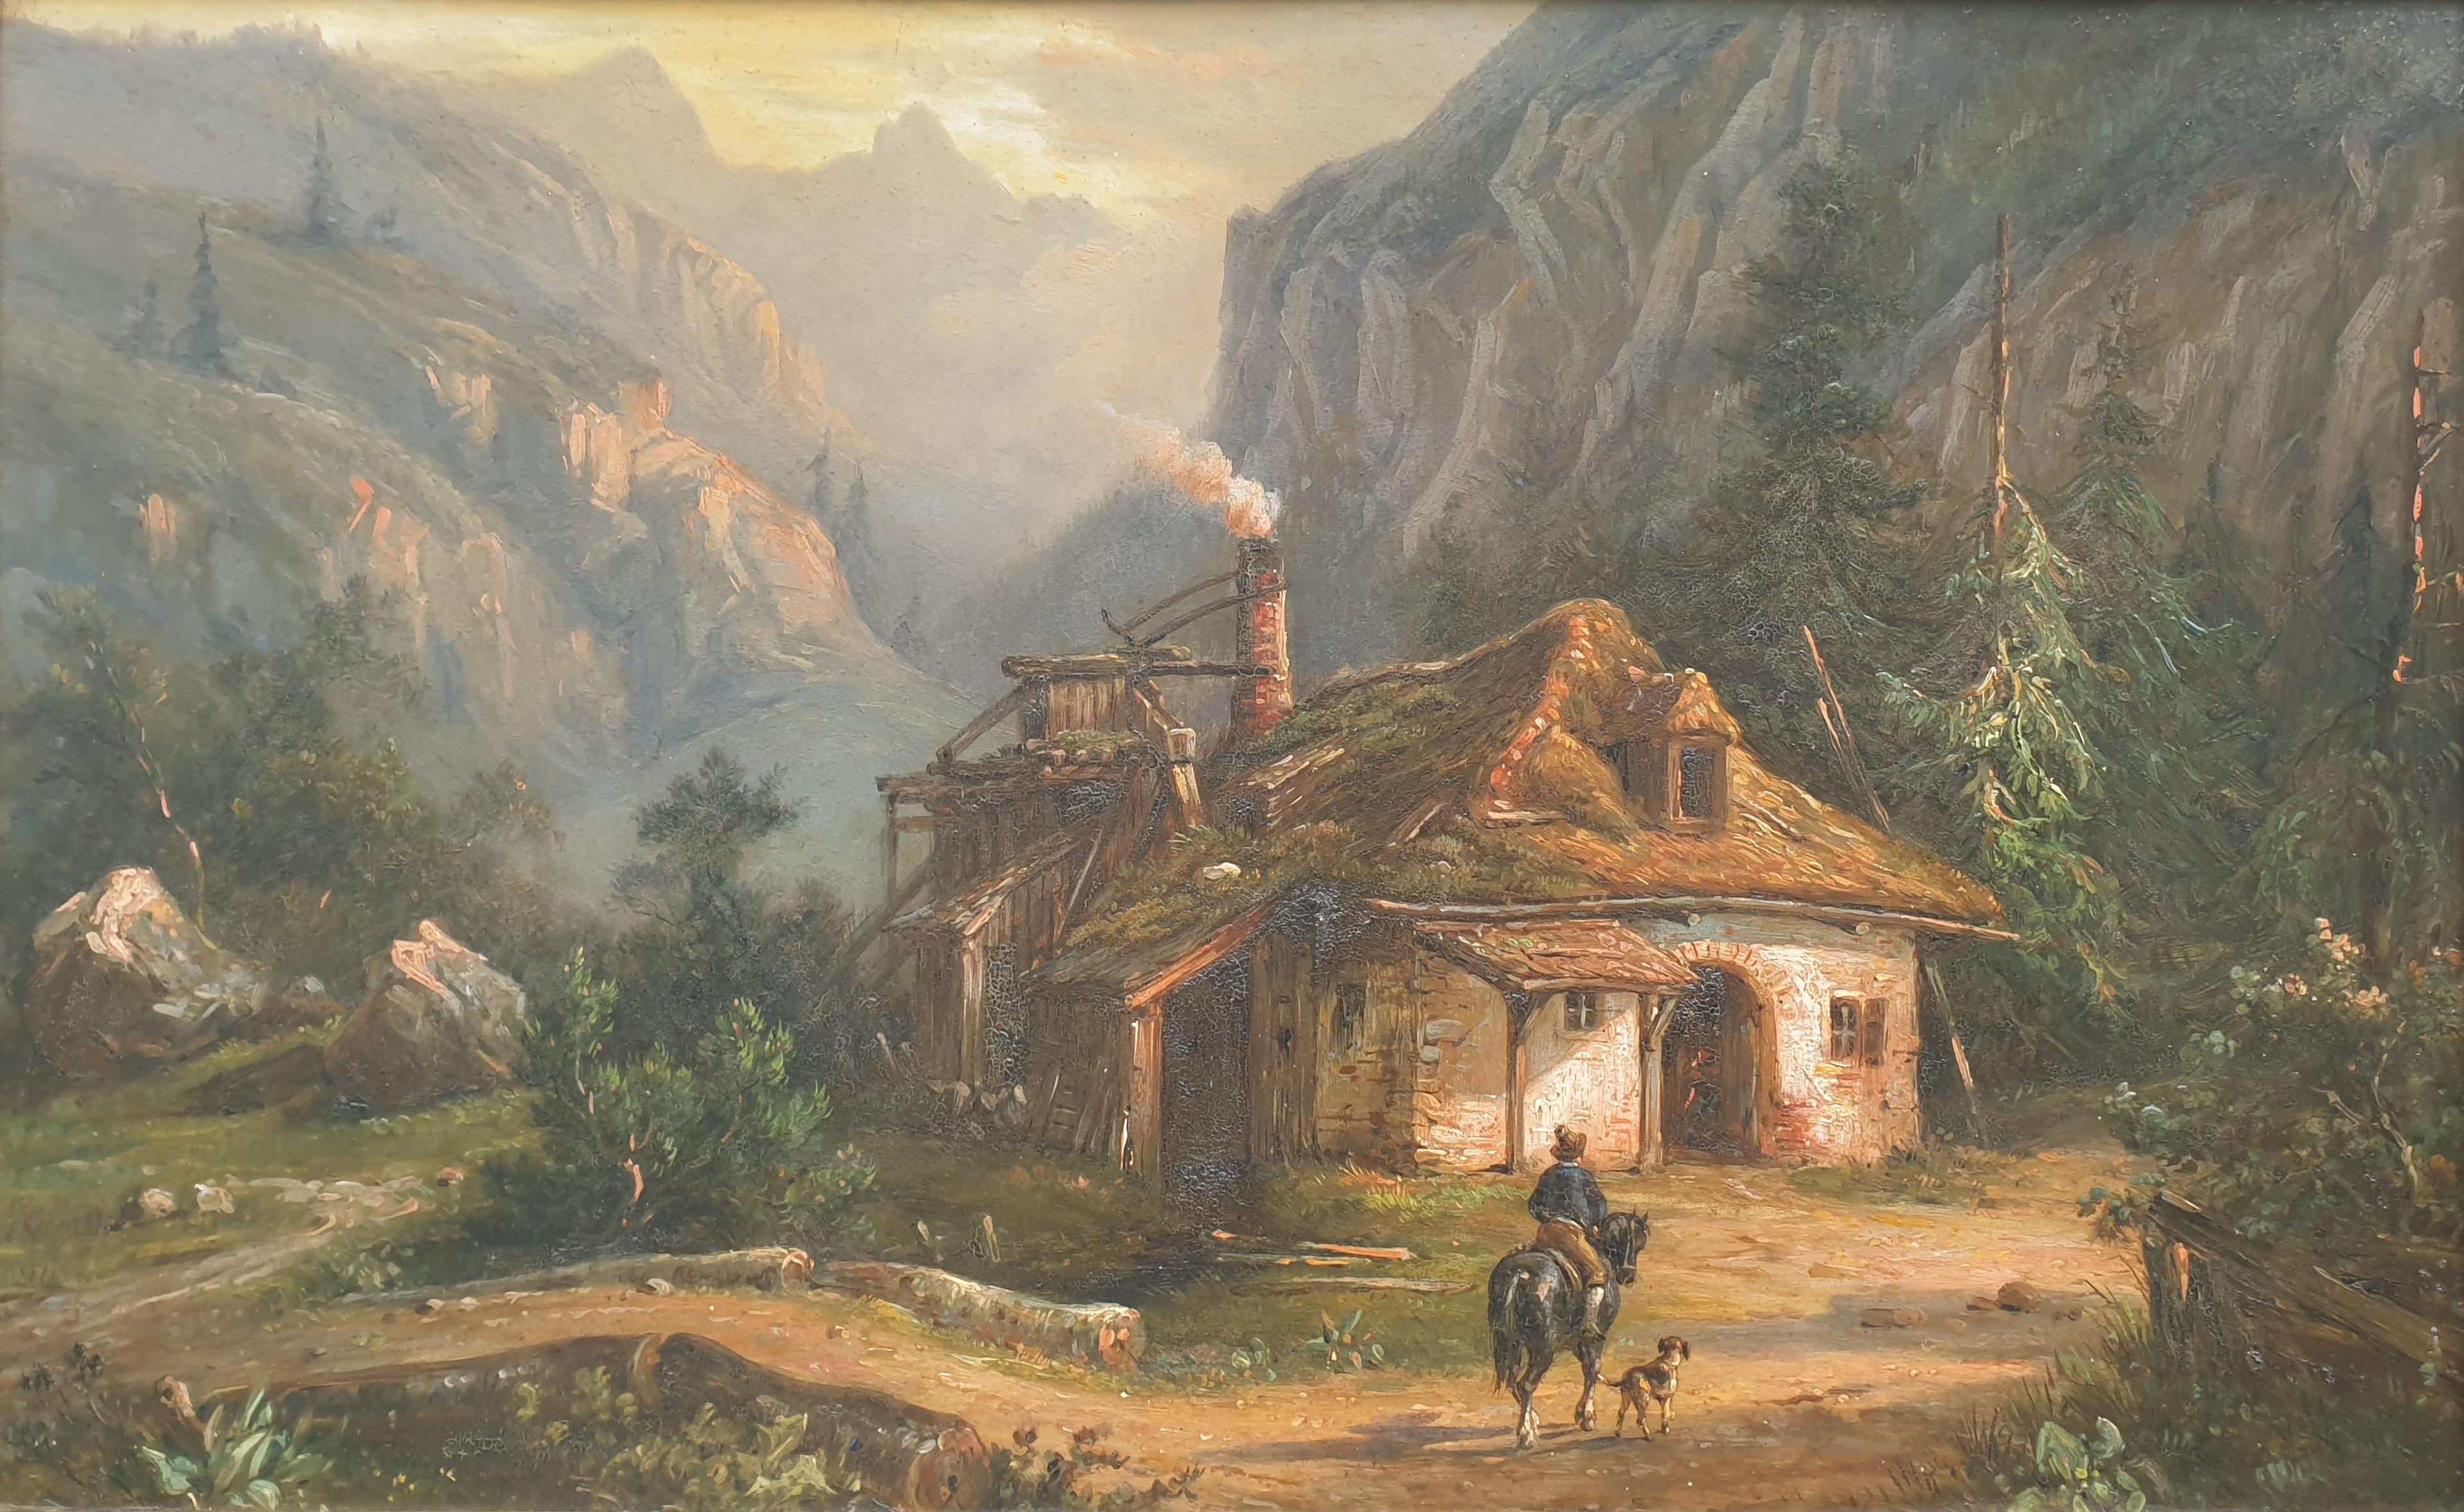 THOMASSIN Attribué aux paysages autrichiens paire romantique peinture Brésil 19ème siècle   - Painting de Desiré Thomassin